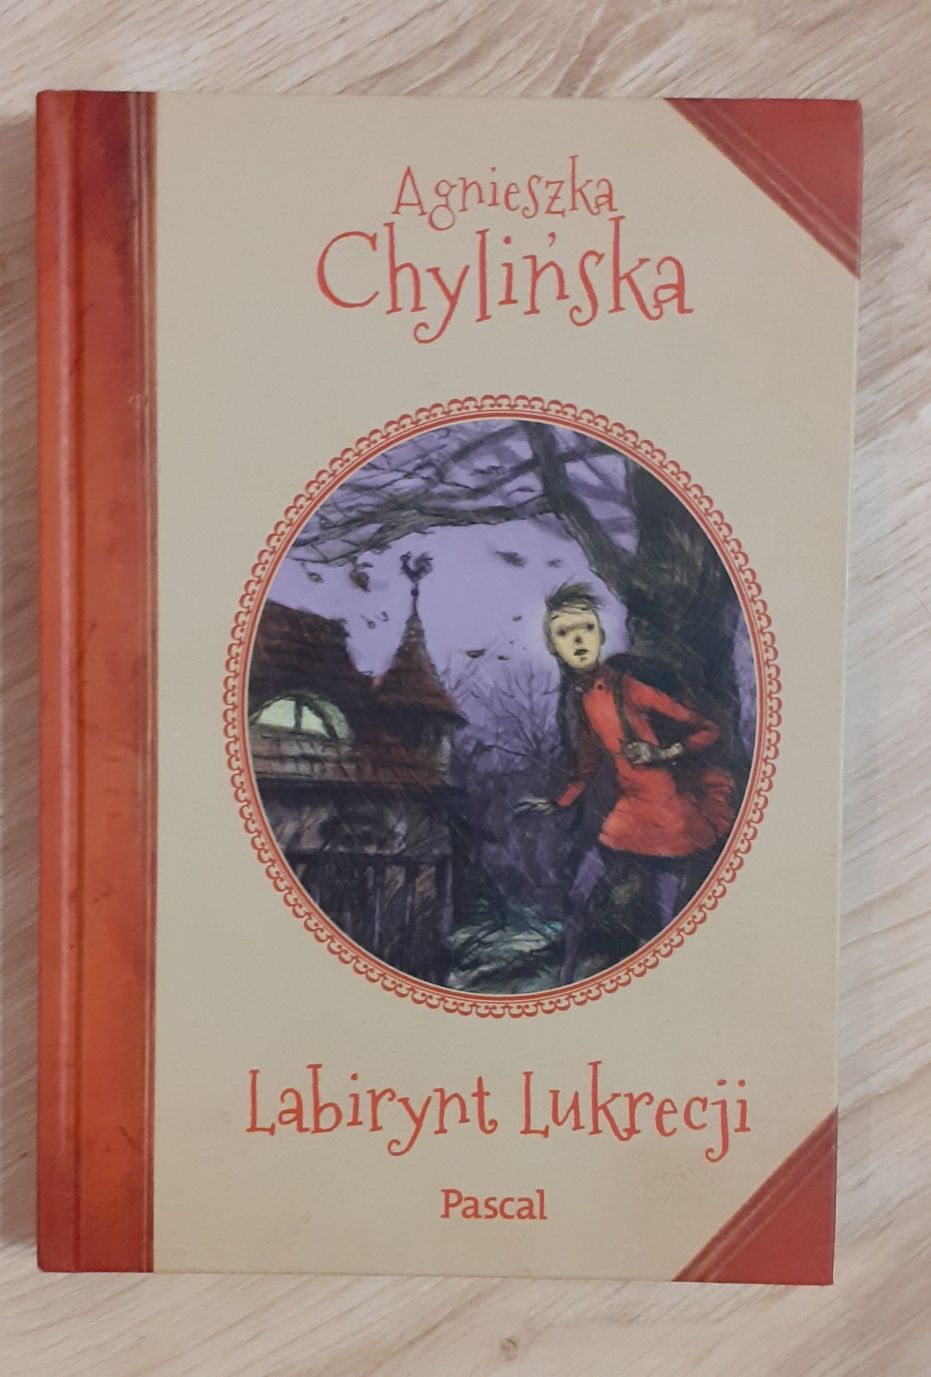 Książka Labirynt Lukrecji Agnieszki Chylińskiej